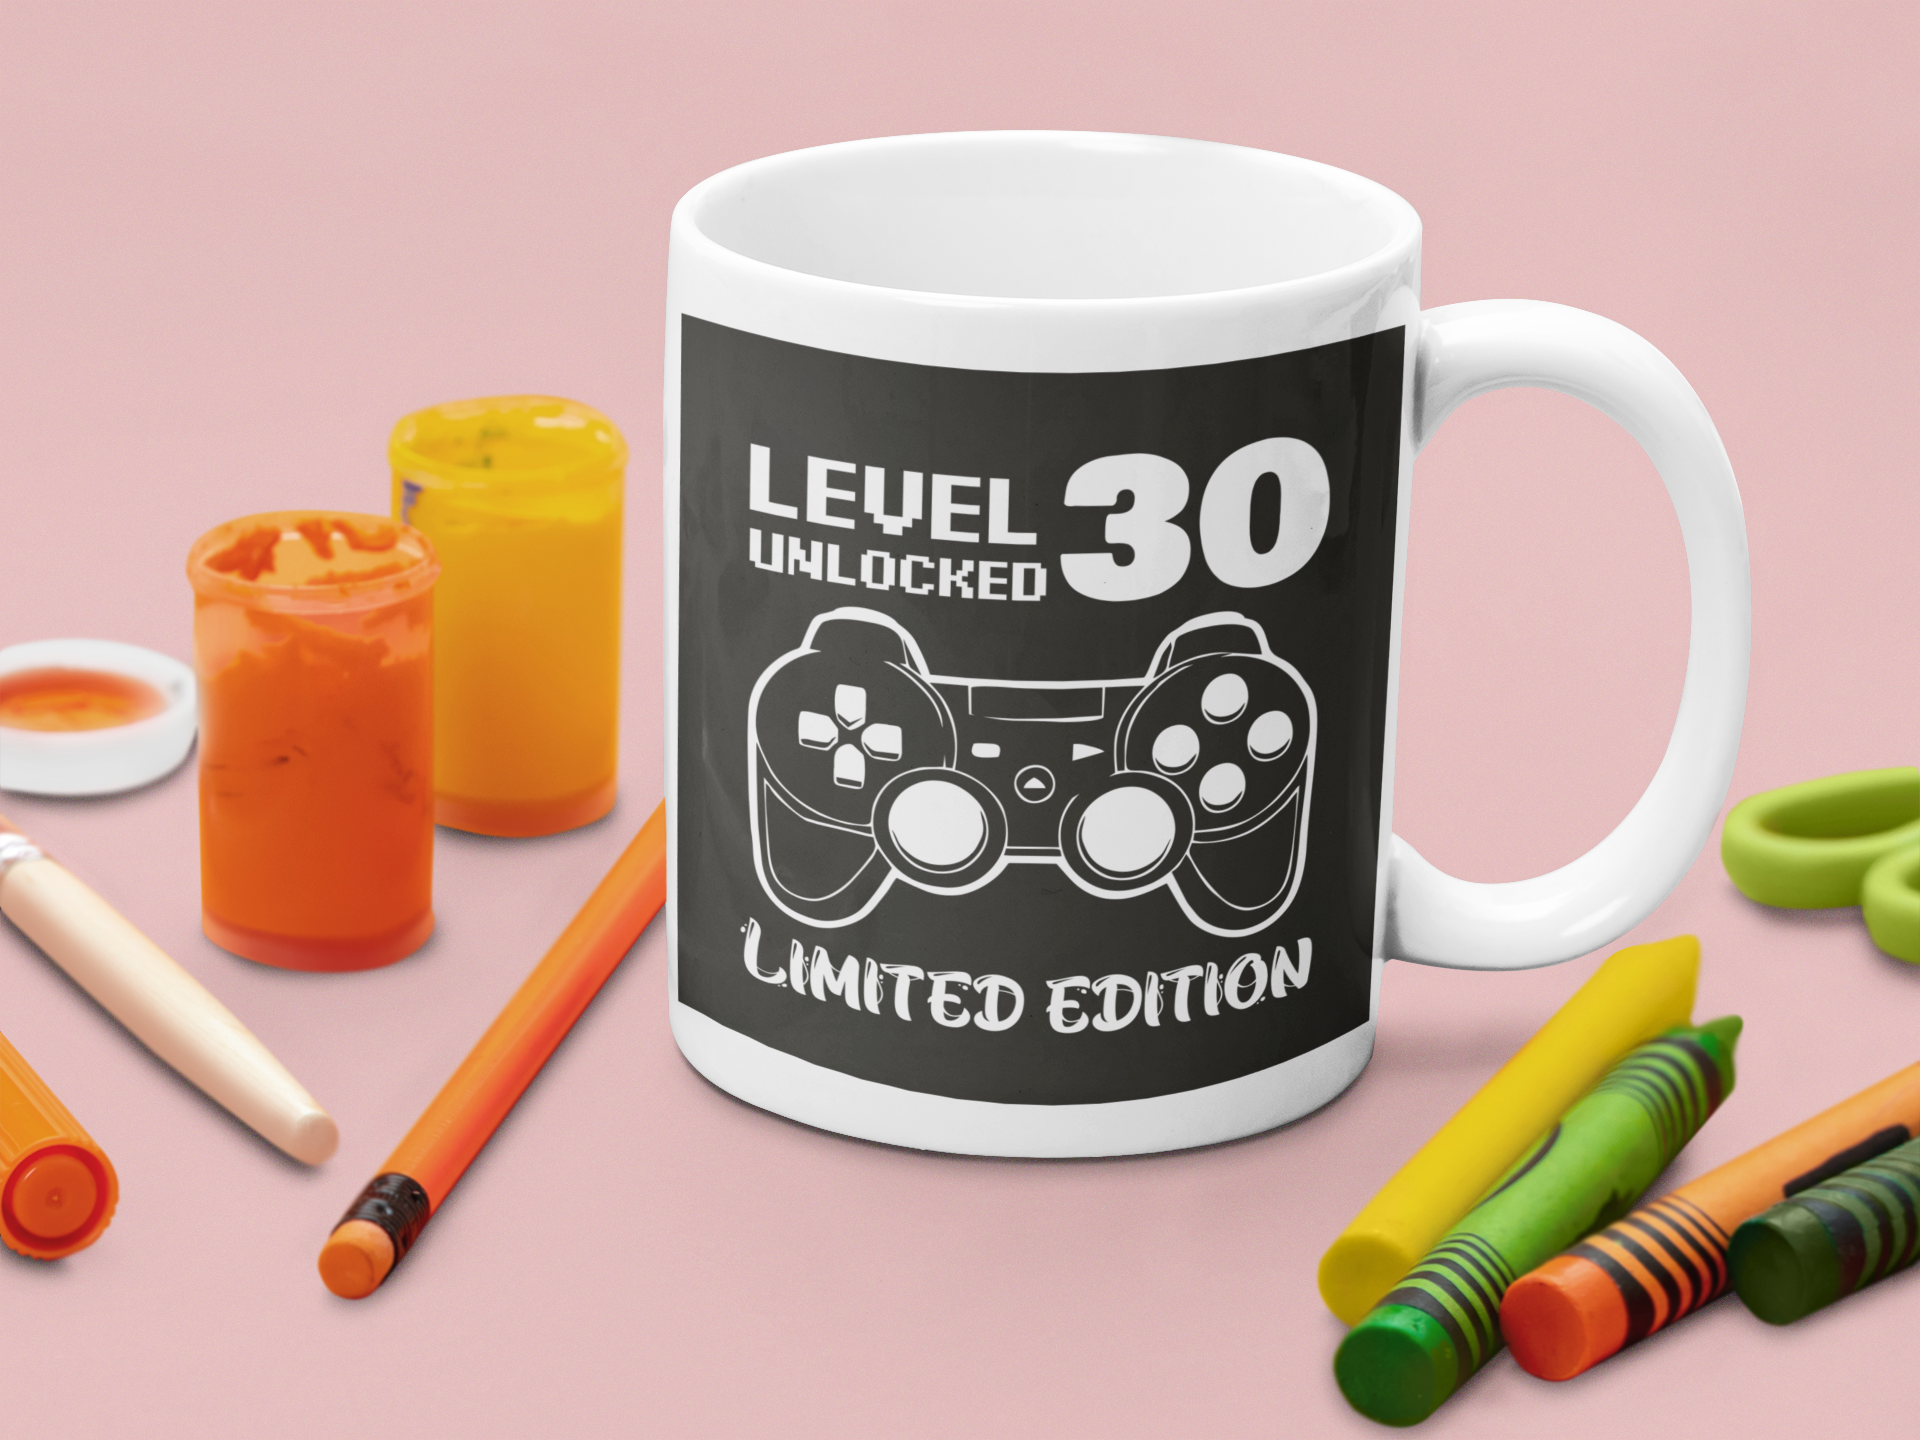 Tazza Compleanno Regalo 30 anni Level Unlocked Limited Edition Mug